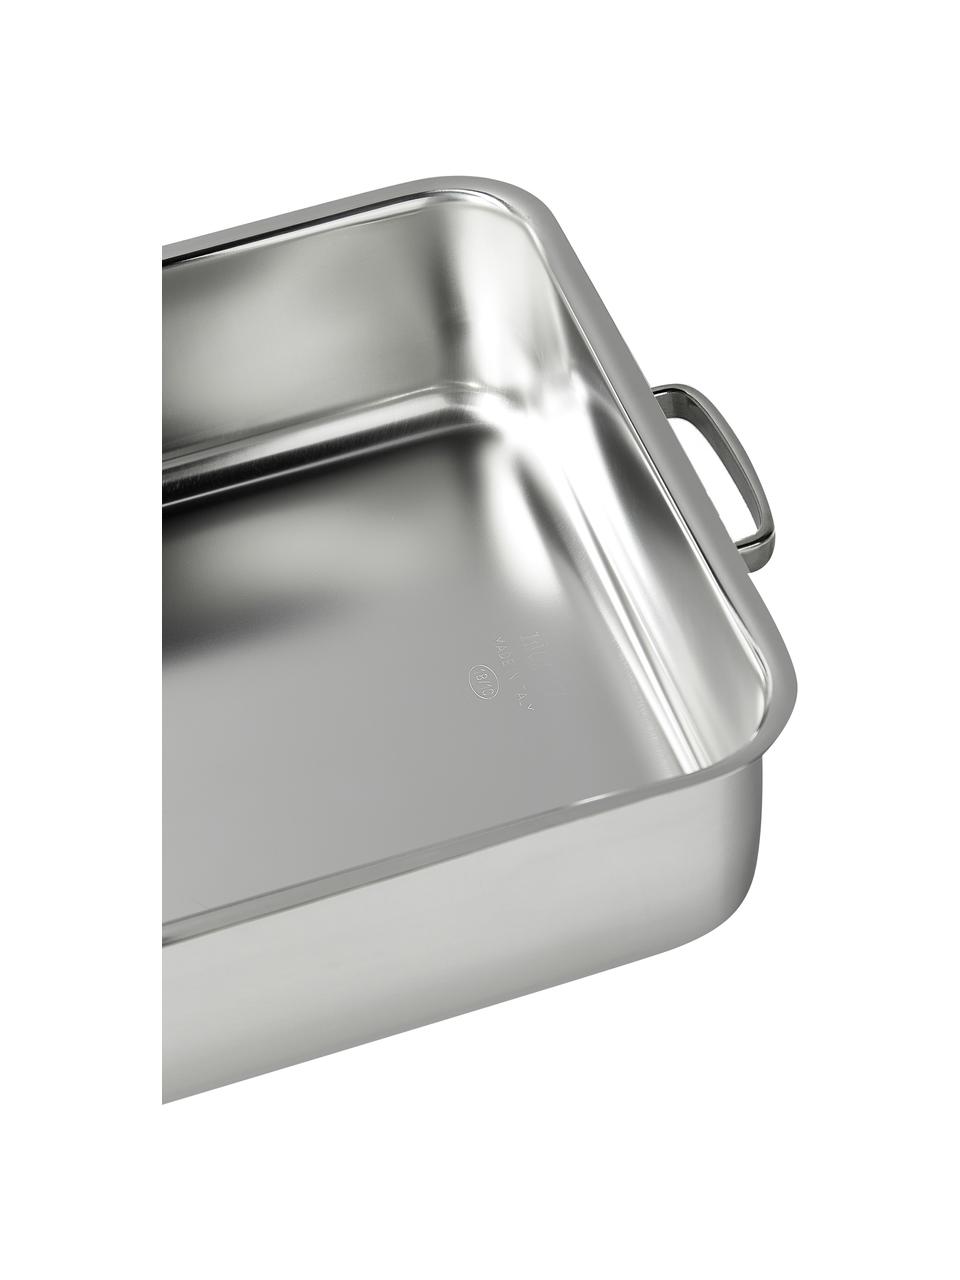 Roestvrijstalen braadpan Premium met deksel, Deksel: glas, silicone, Zilverkleurig, grijs, L 36 x B 25 cm